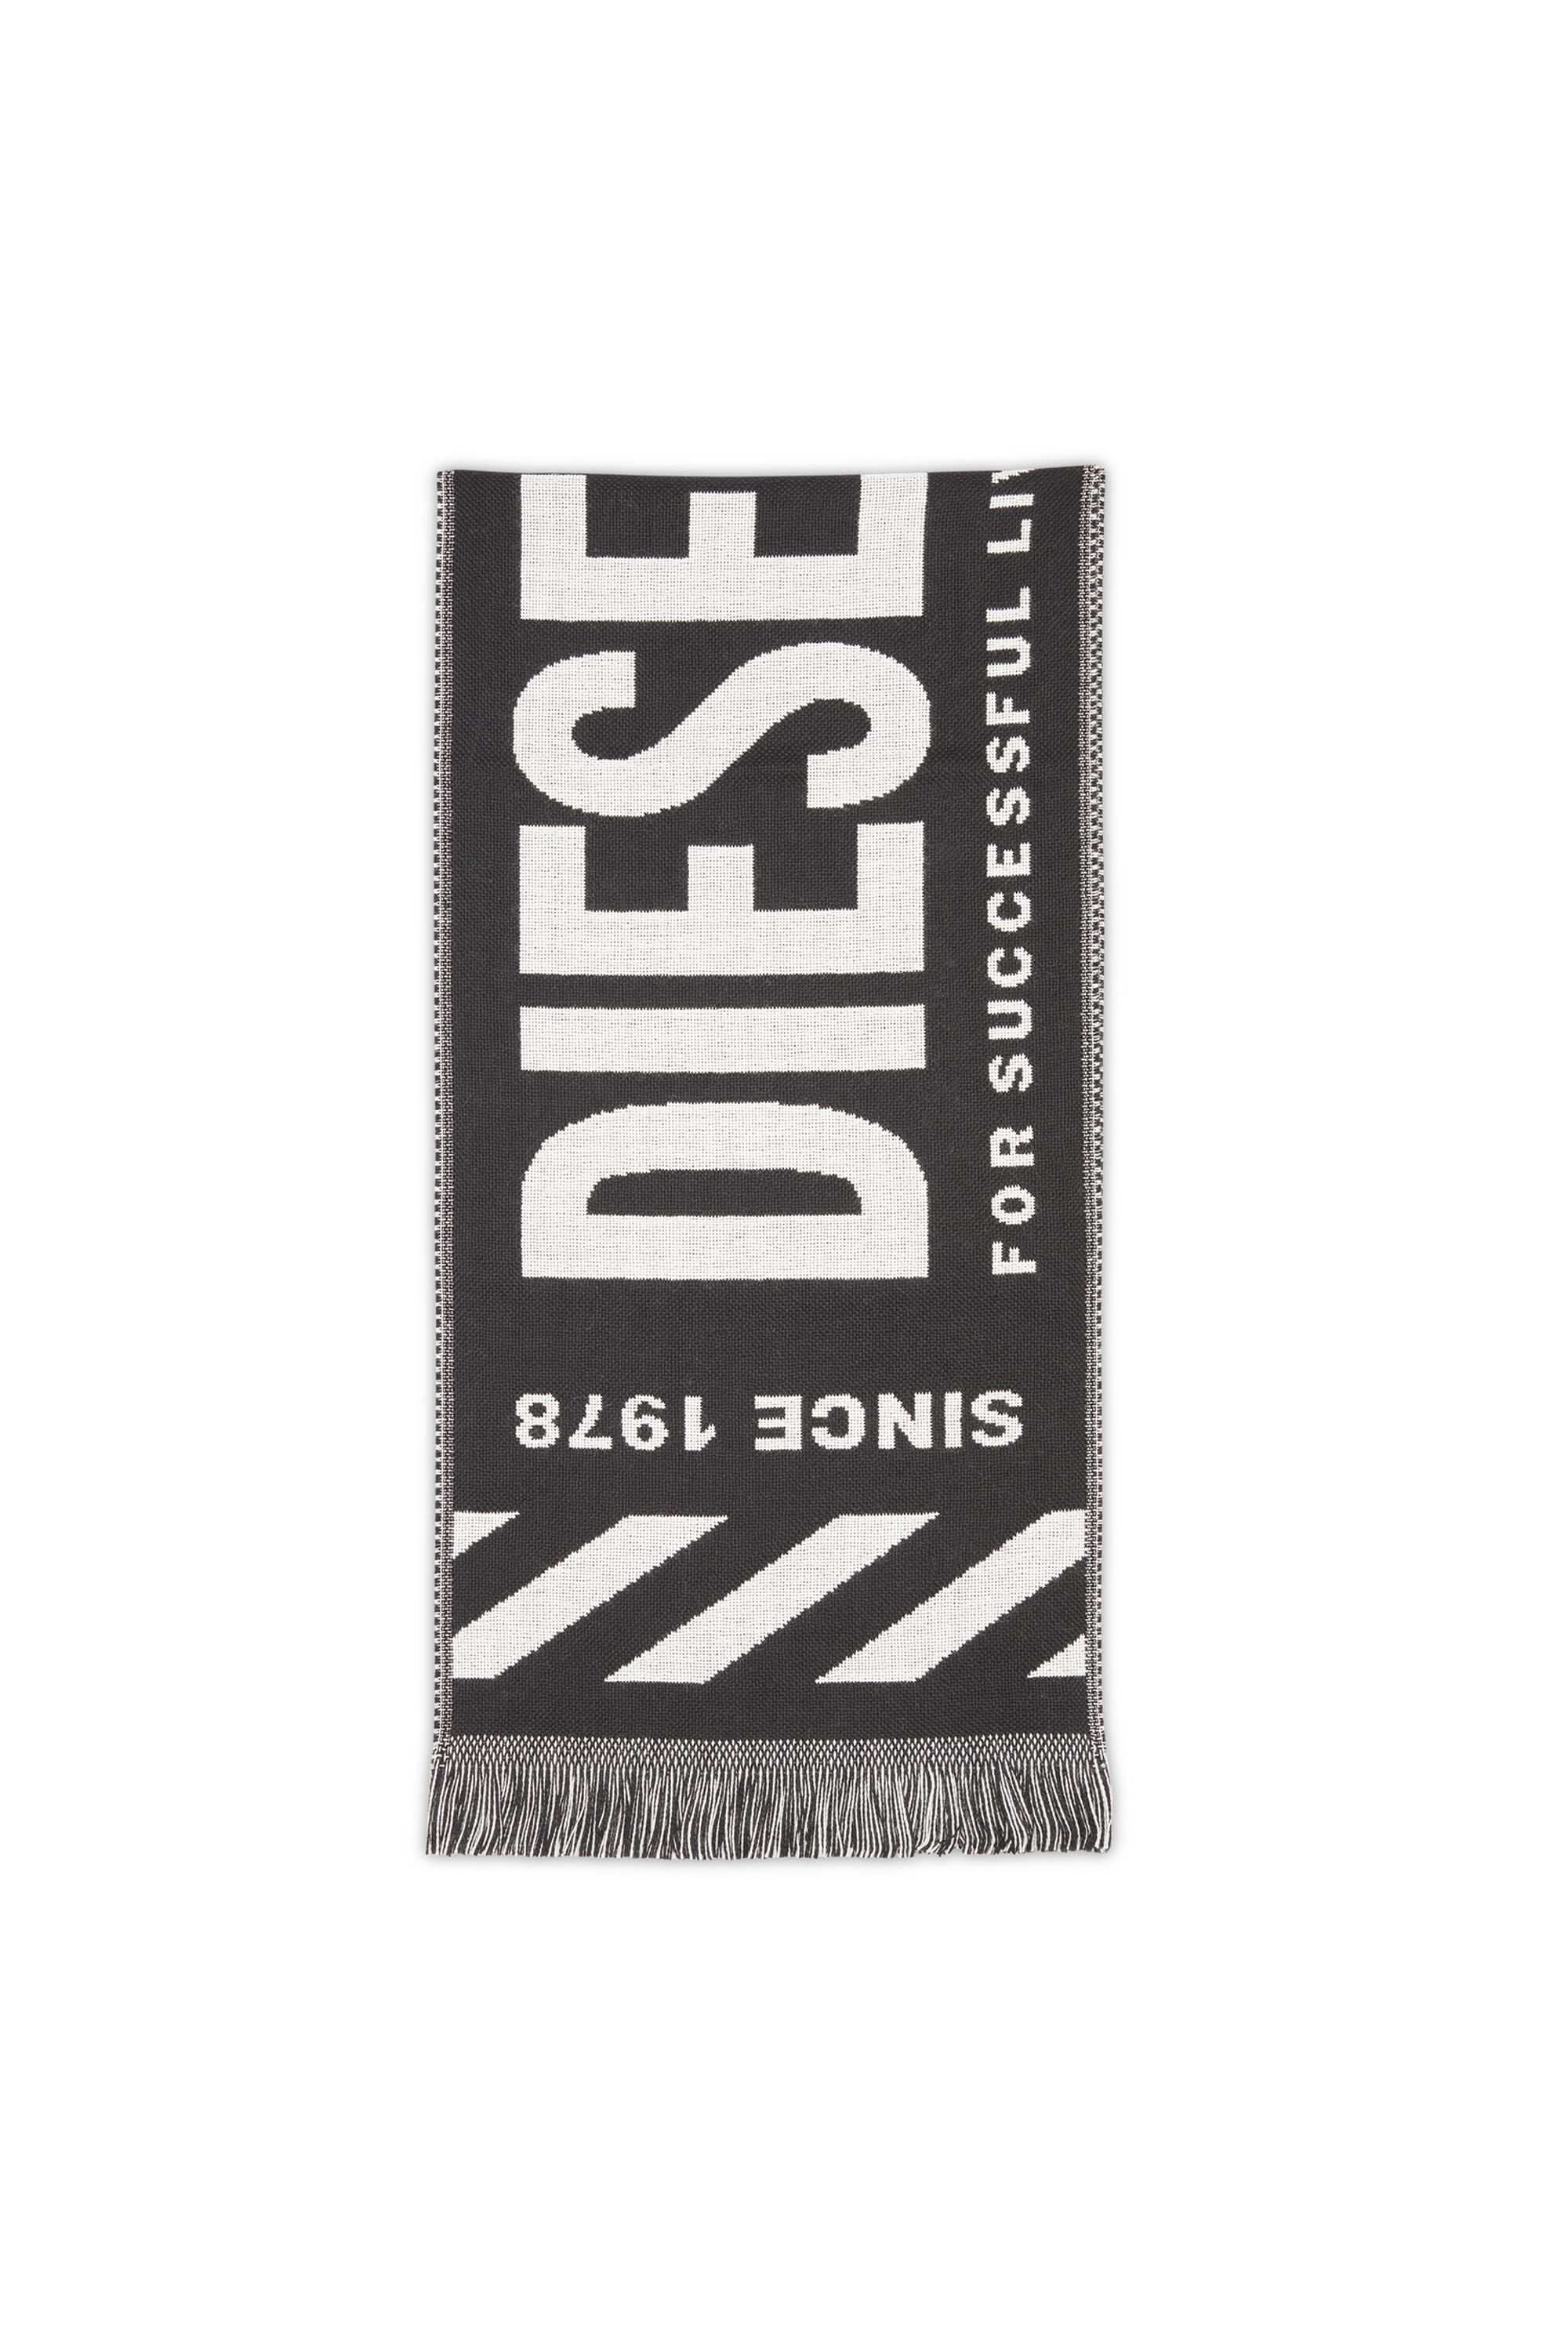 Diesel - S-BISC, Negro - Image 1